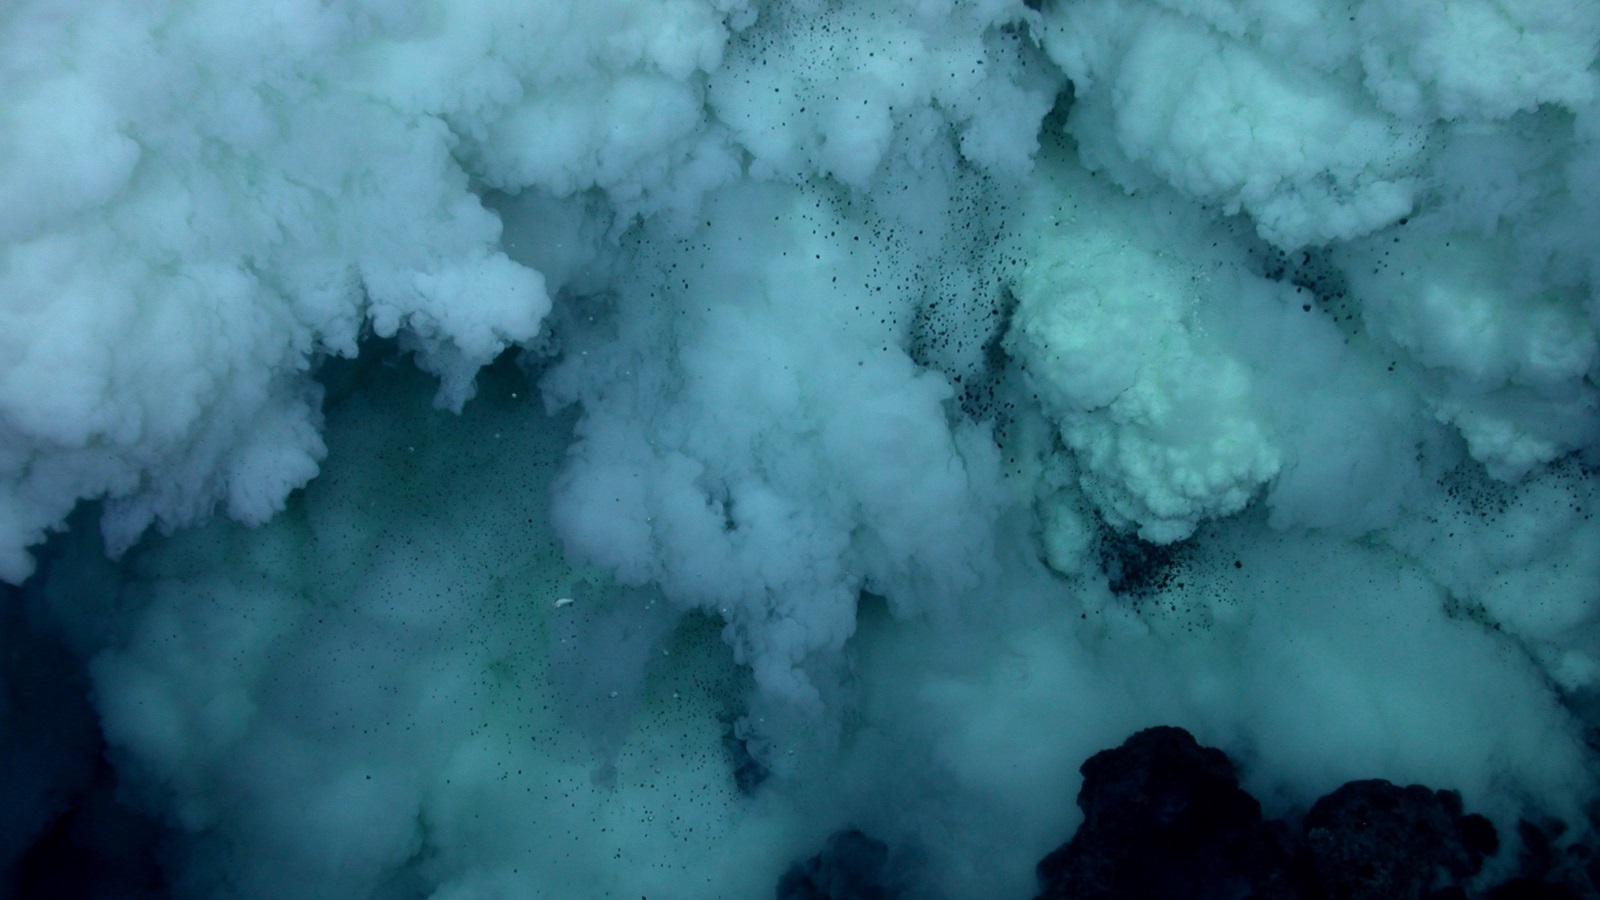 ‪تنشأ الفتحات الحرارية في قاع البحر ويتسرب منها ثاني أكسيد الكربون ومركبات سامة (فليكرز)‬ تنشأ الفتحات الحرارية في قاع البحر ويتسرب منها ثاني أكسيد الكربون ومركبات سامة (فليكرز)